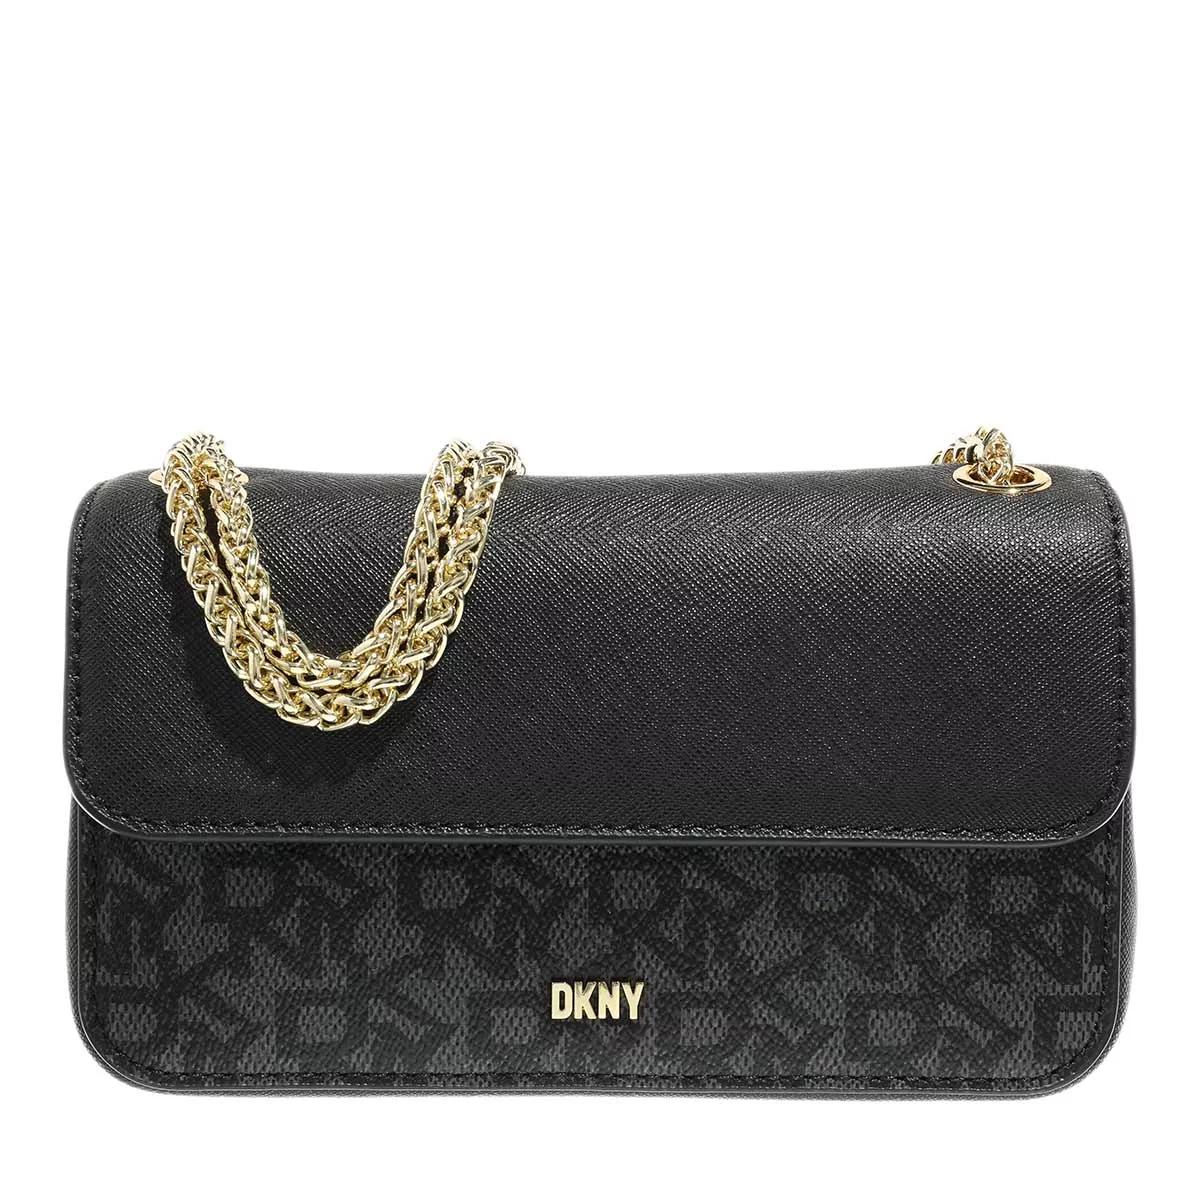 DKNY Minnie Shoulder Bag Black/Black, Mini Bag